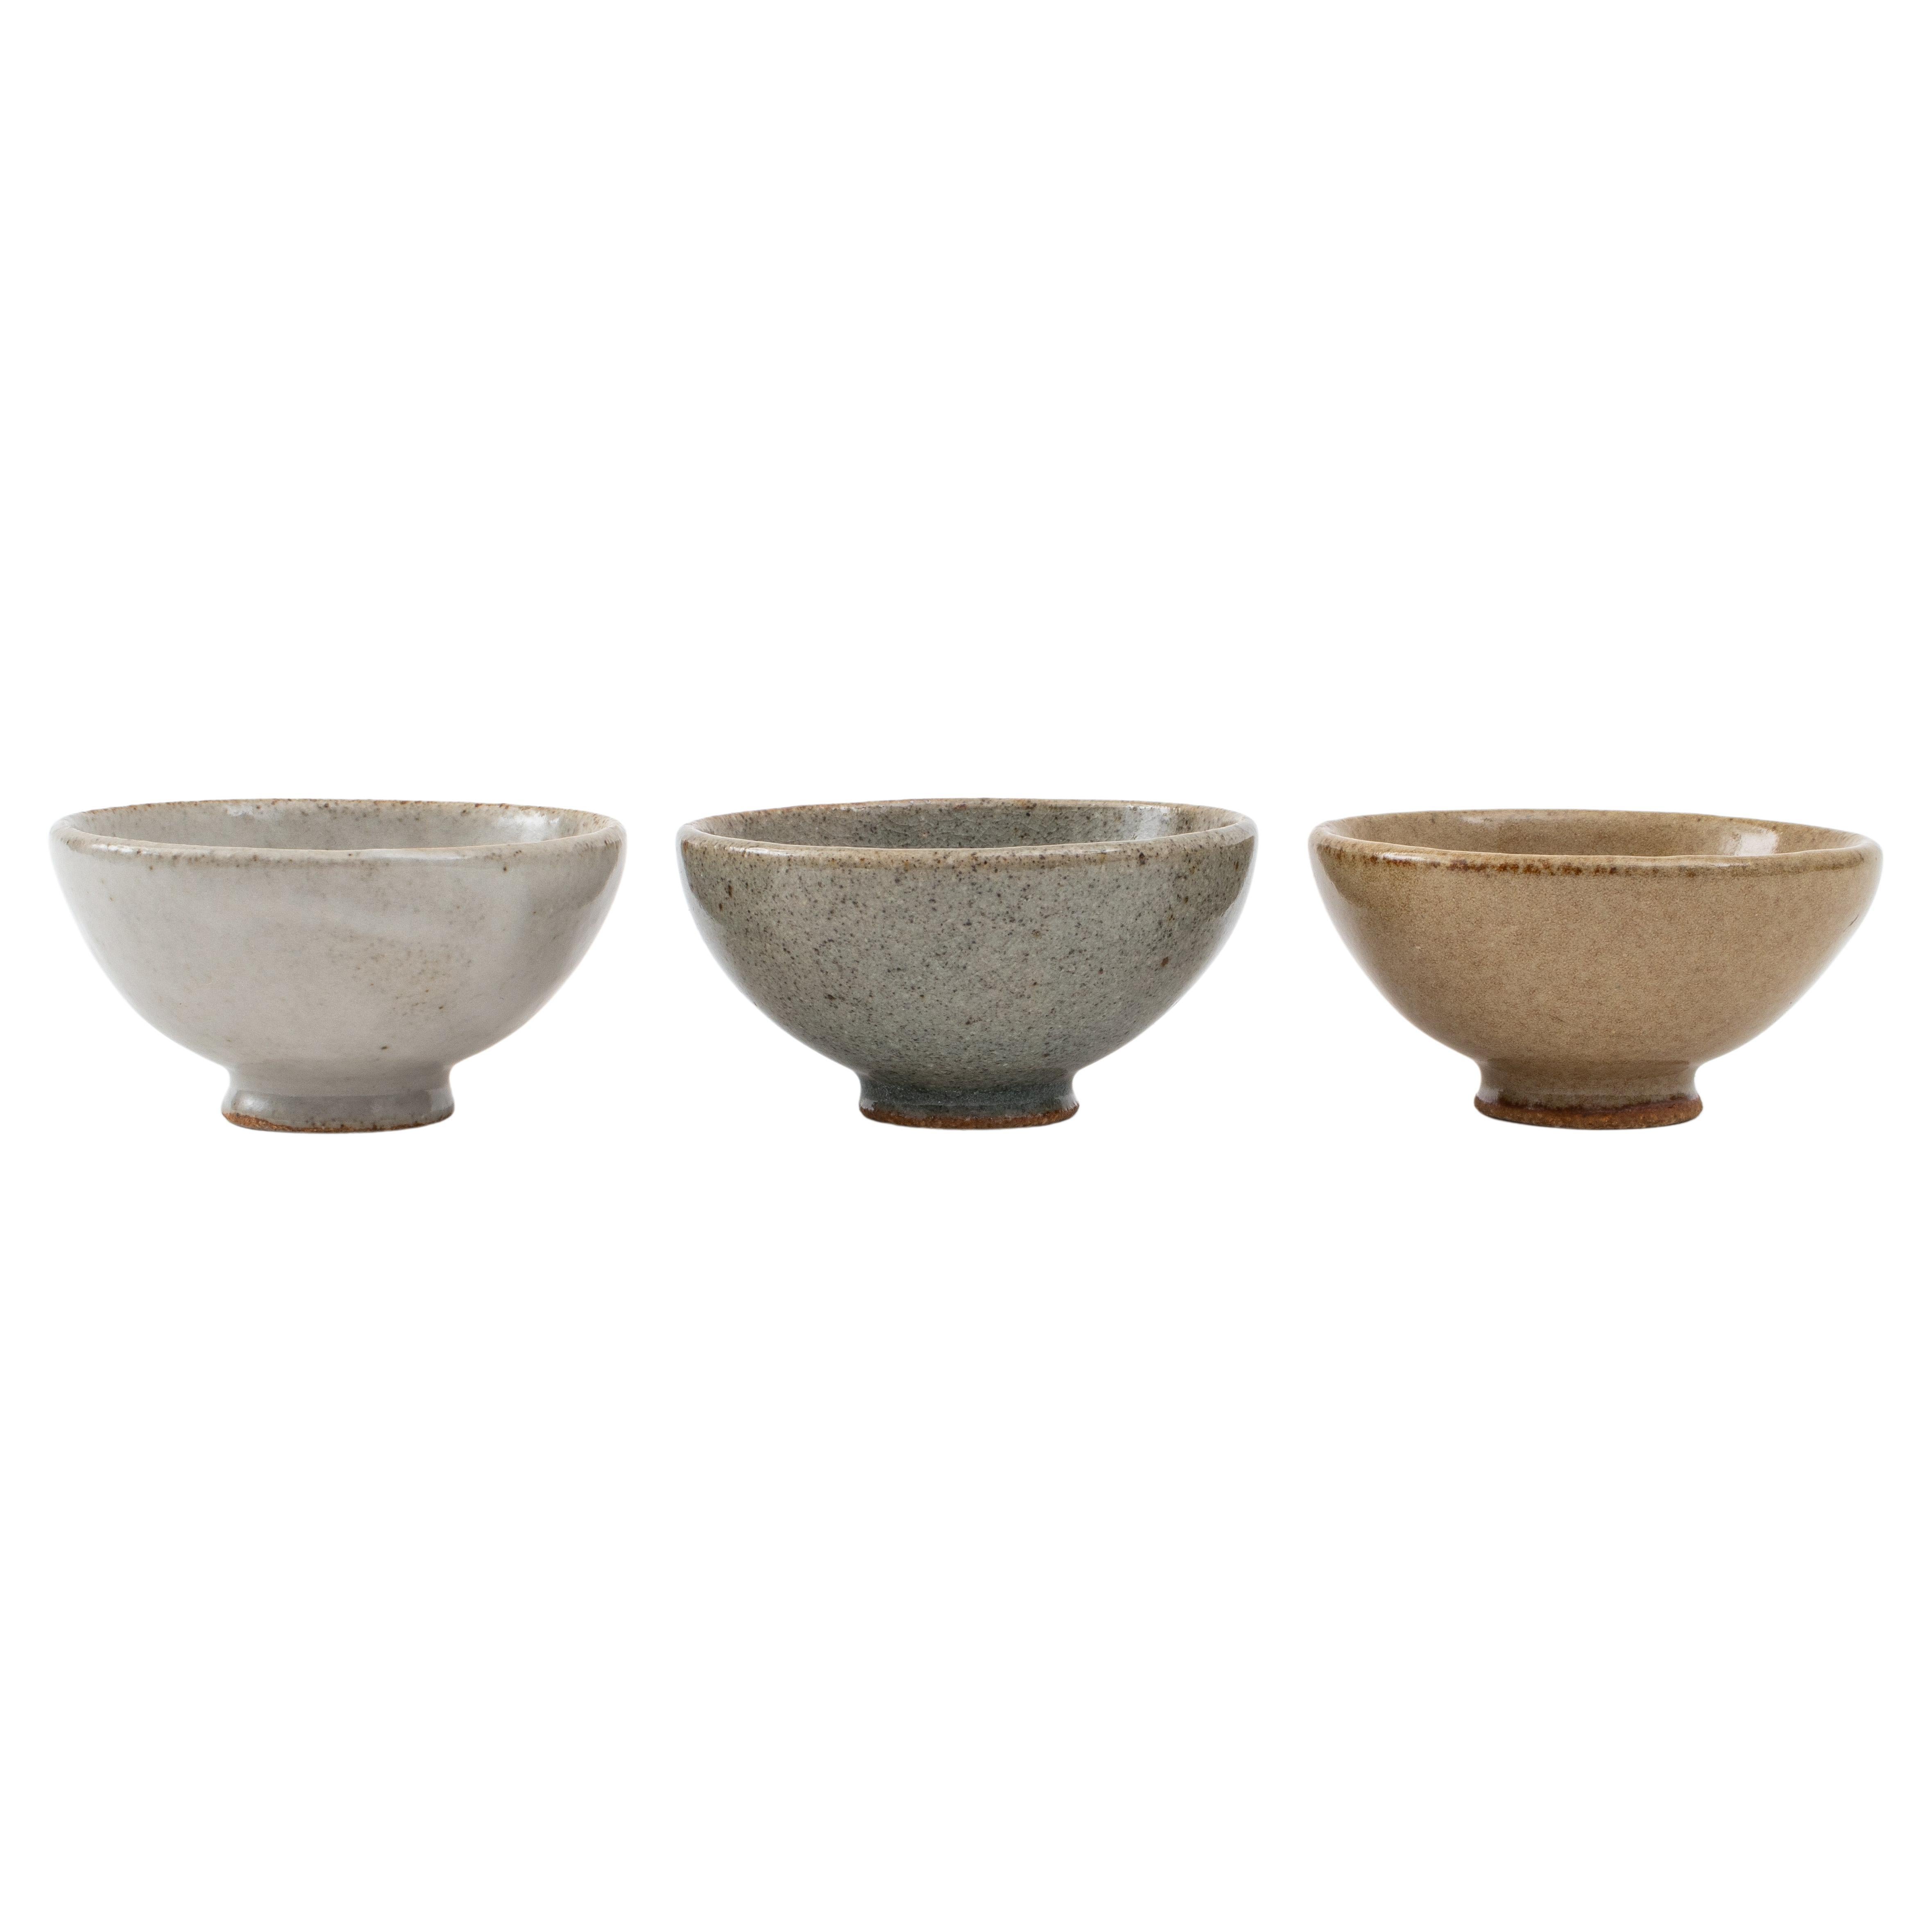 Steve Friedlander Glazed Ceramic Sake Cups, Set of 3, Signed